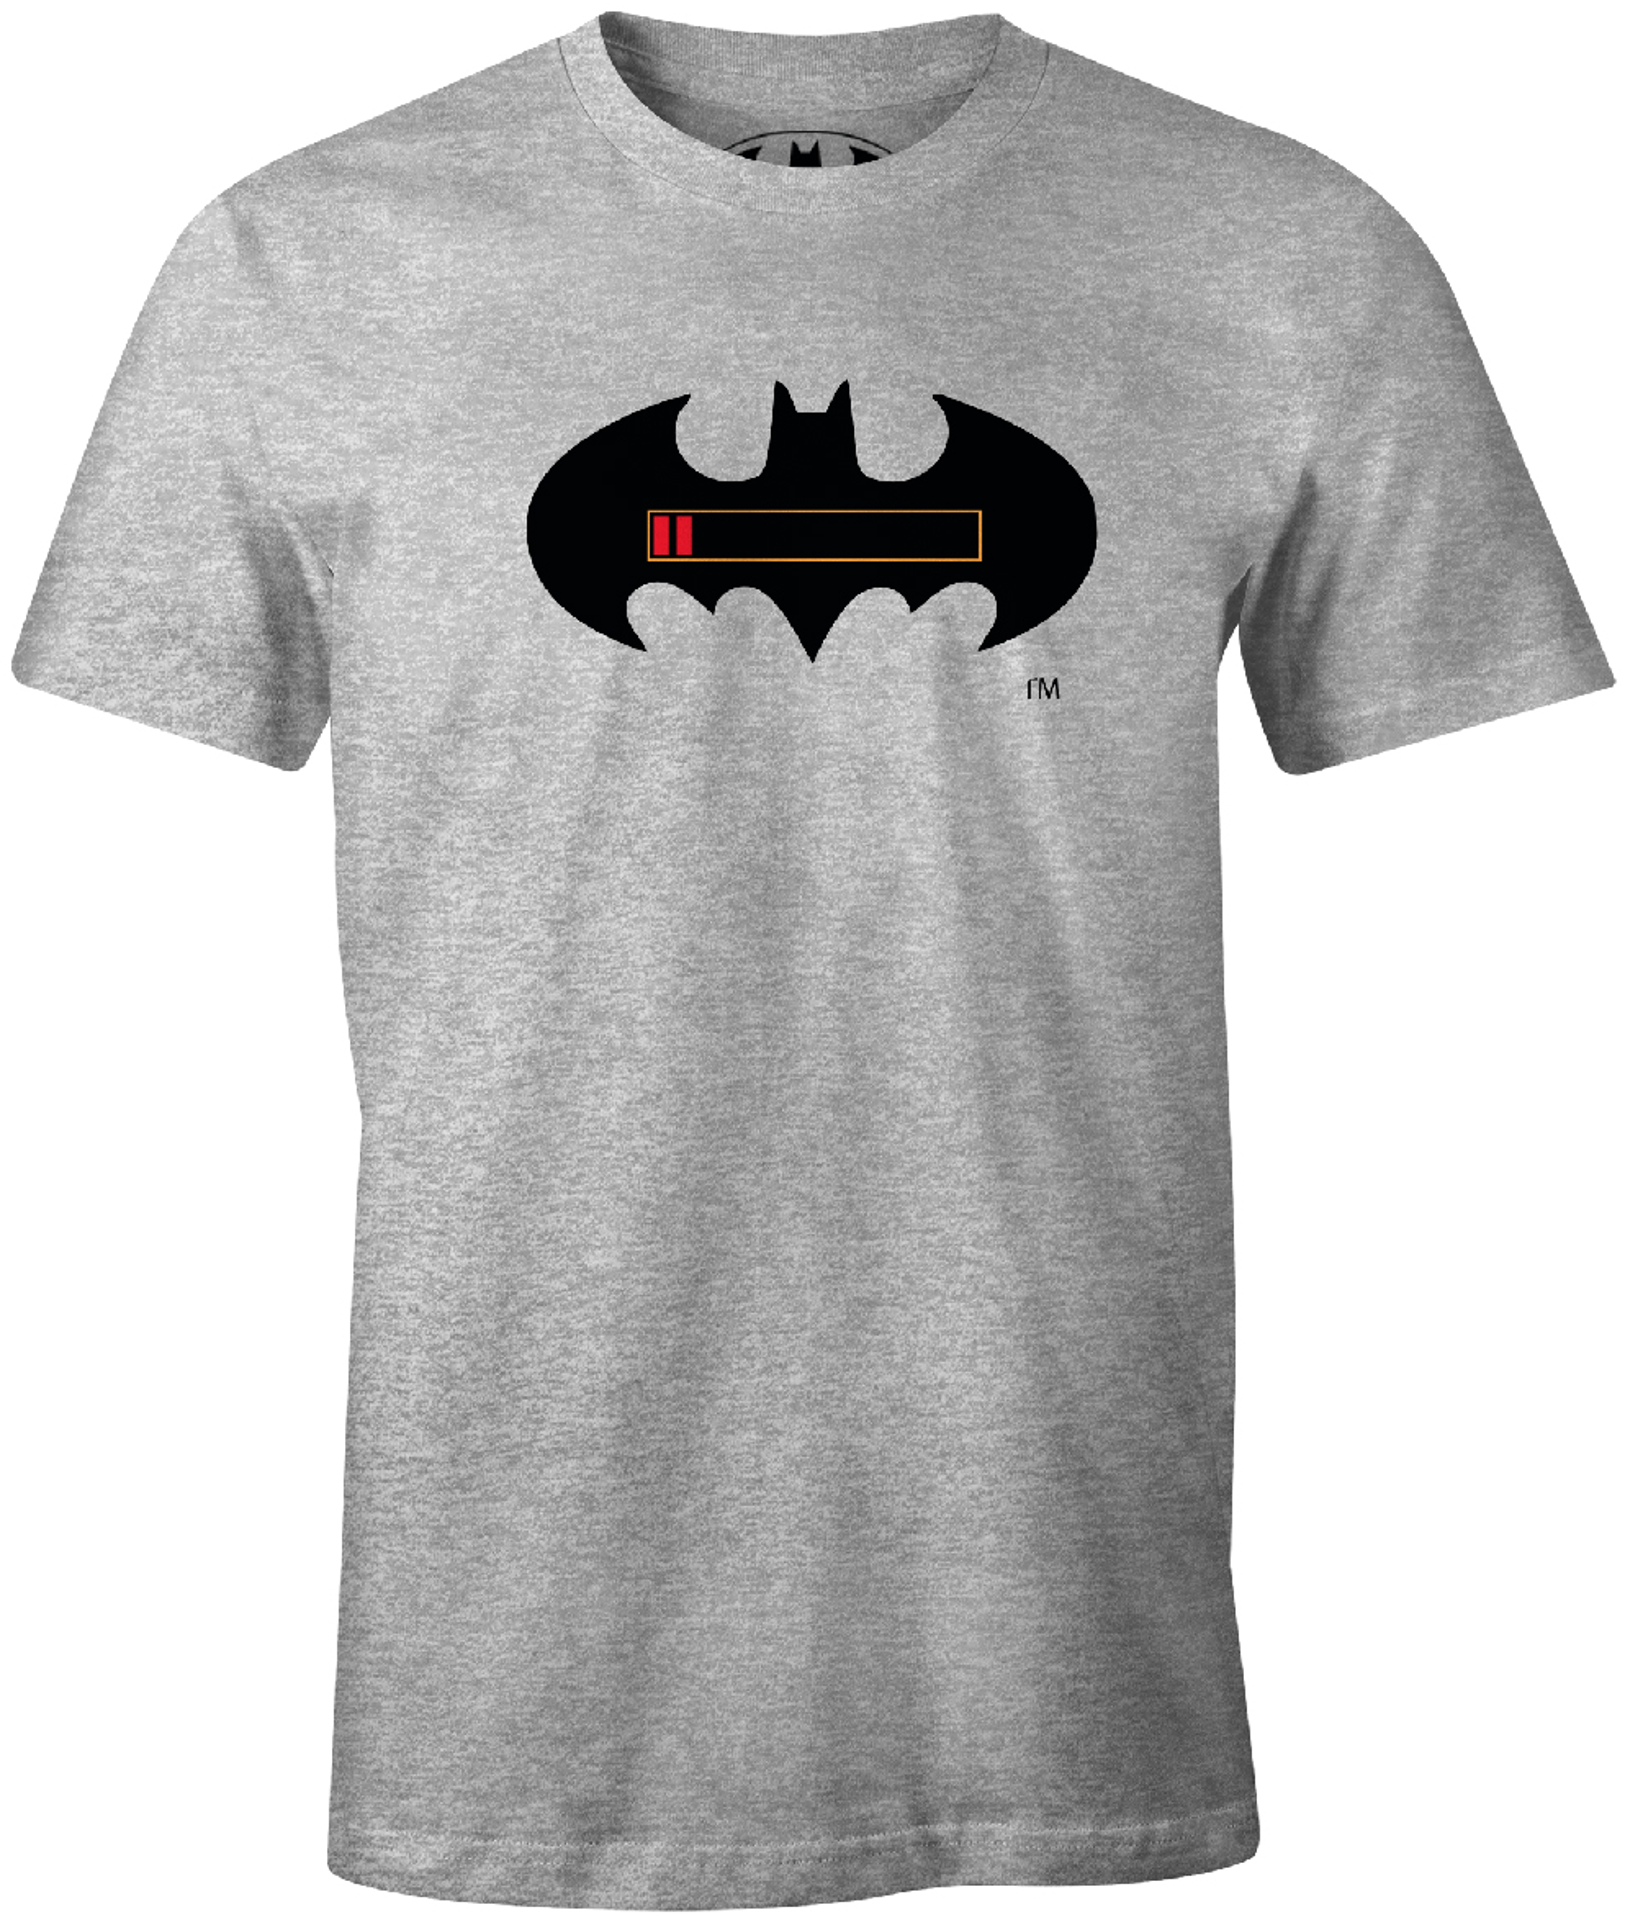 DC Comics - T-Shirt Gris Enfant Batman Batterie à pleine charge - 6 ans